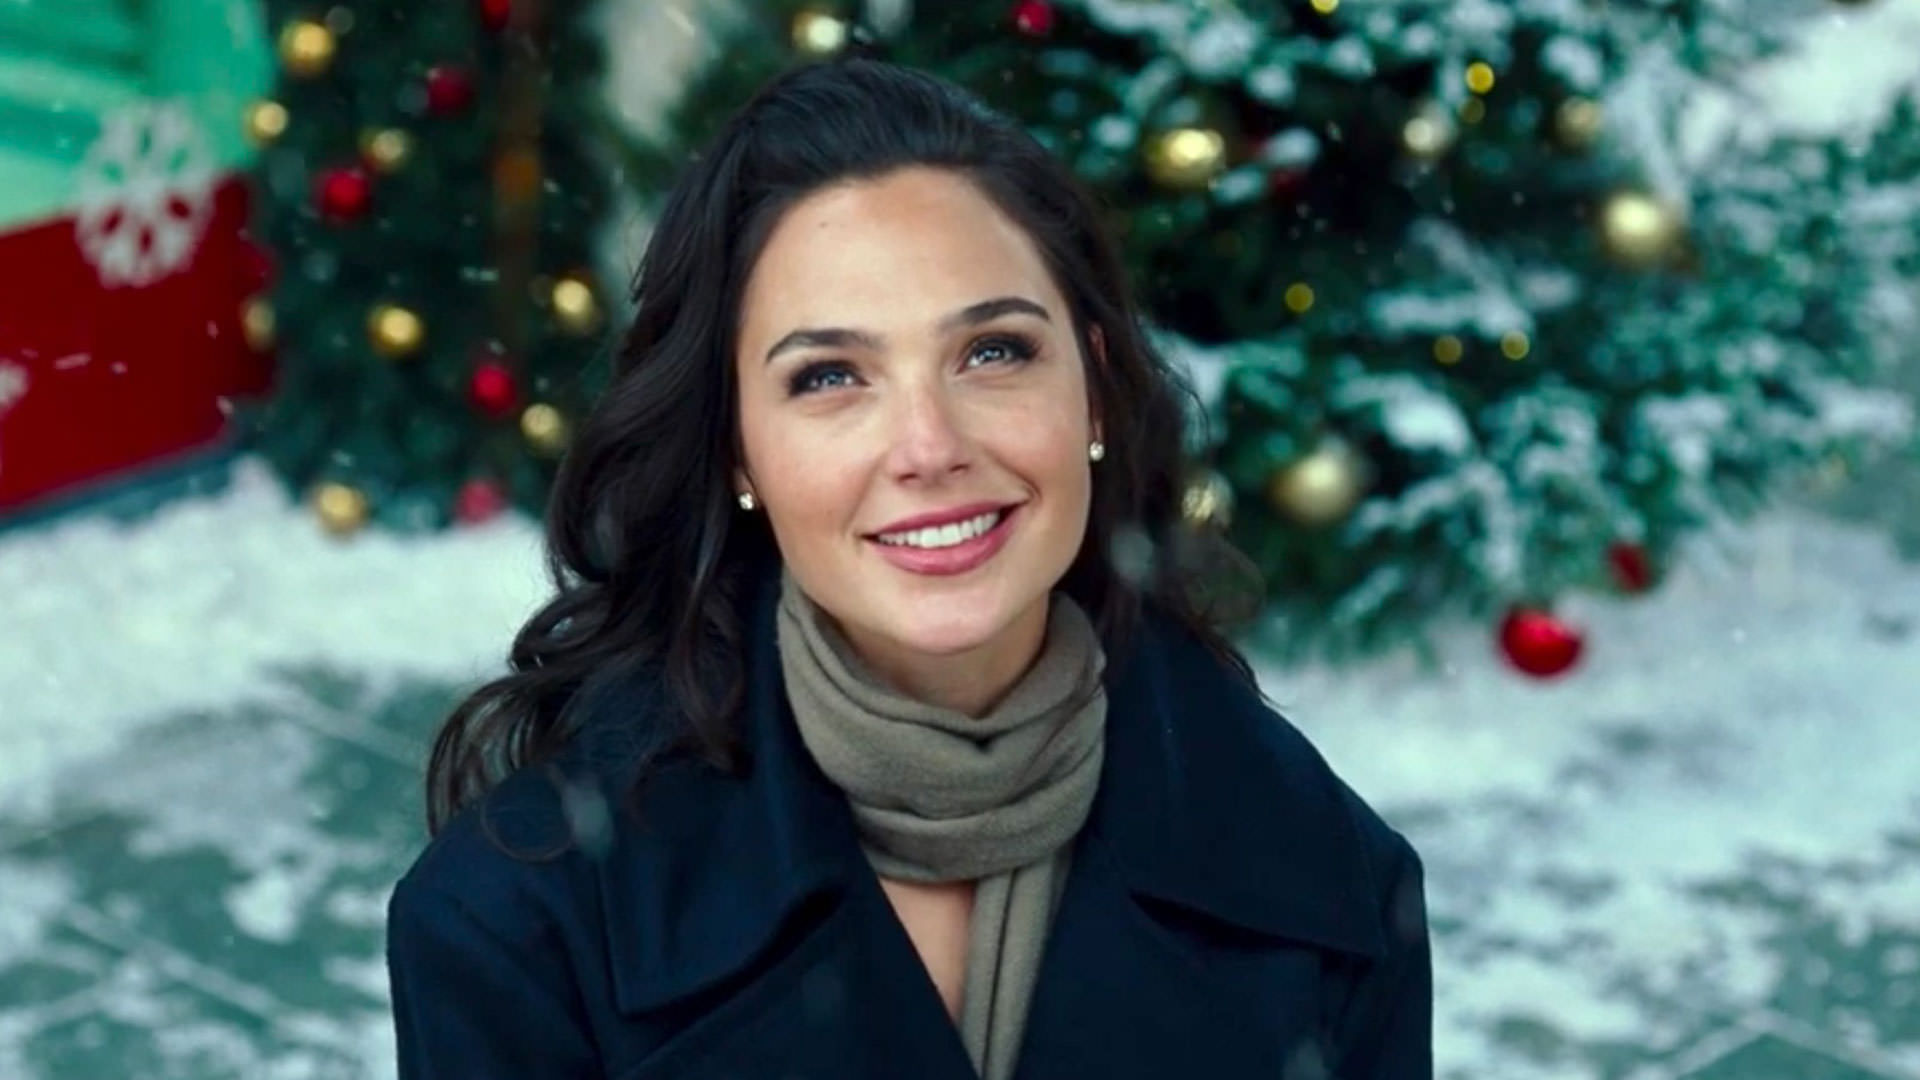 لبخند گدوت زیر برف و جلوی درختان تزئین شده در Wonder Woman 1984